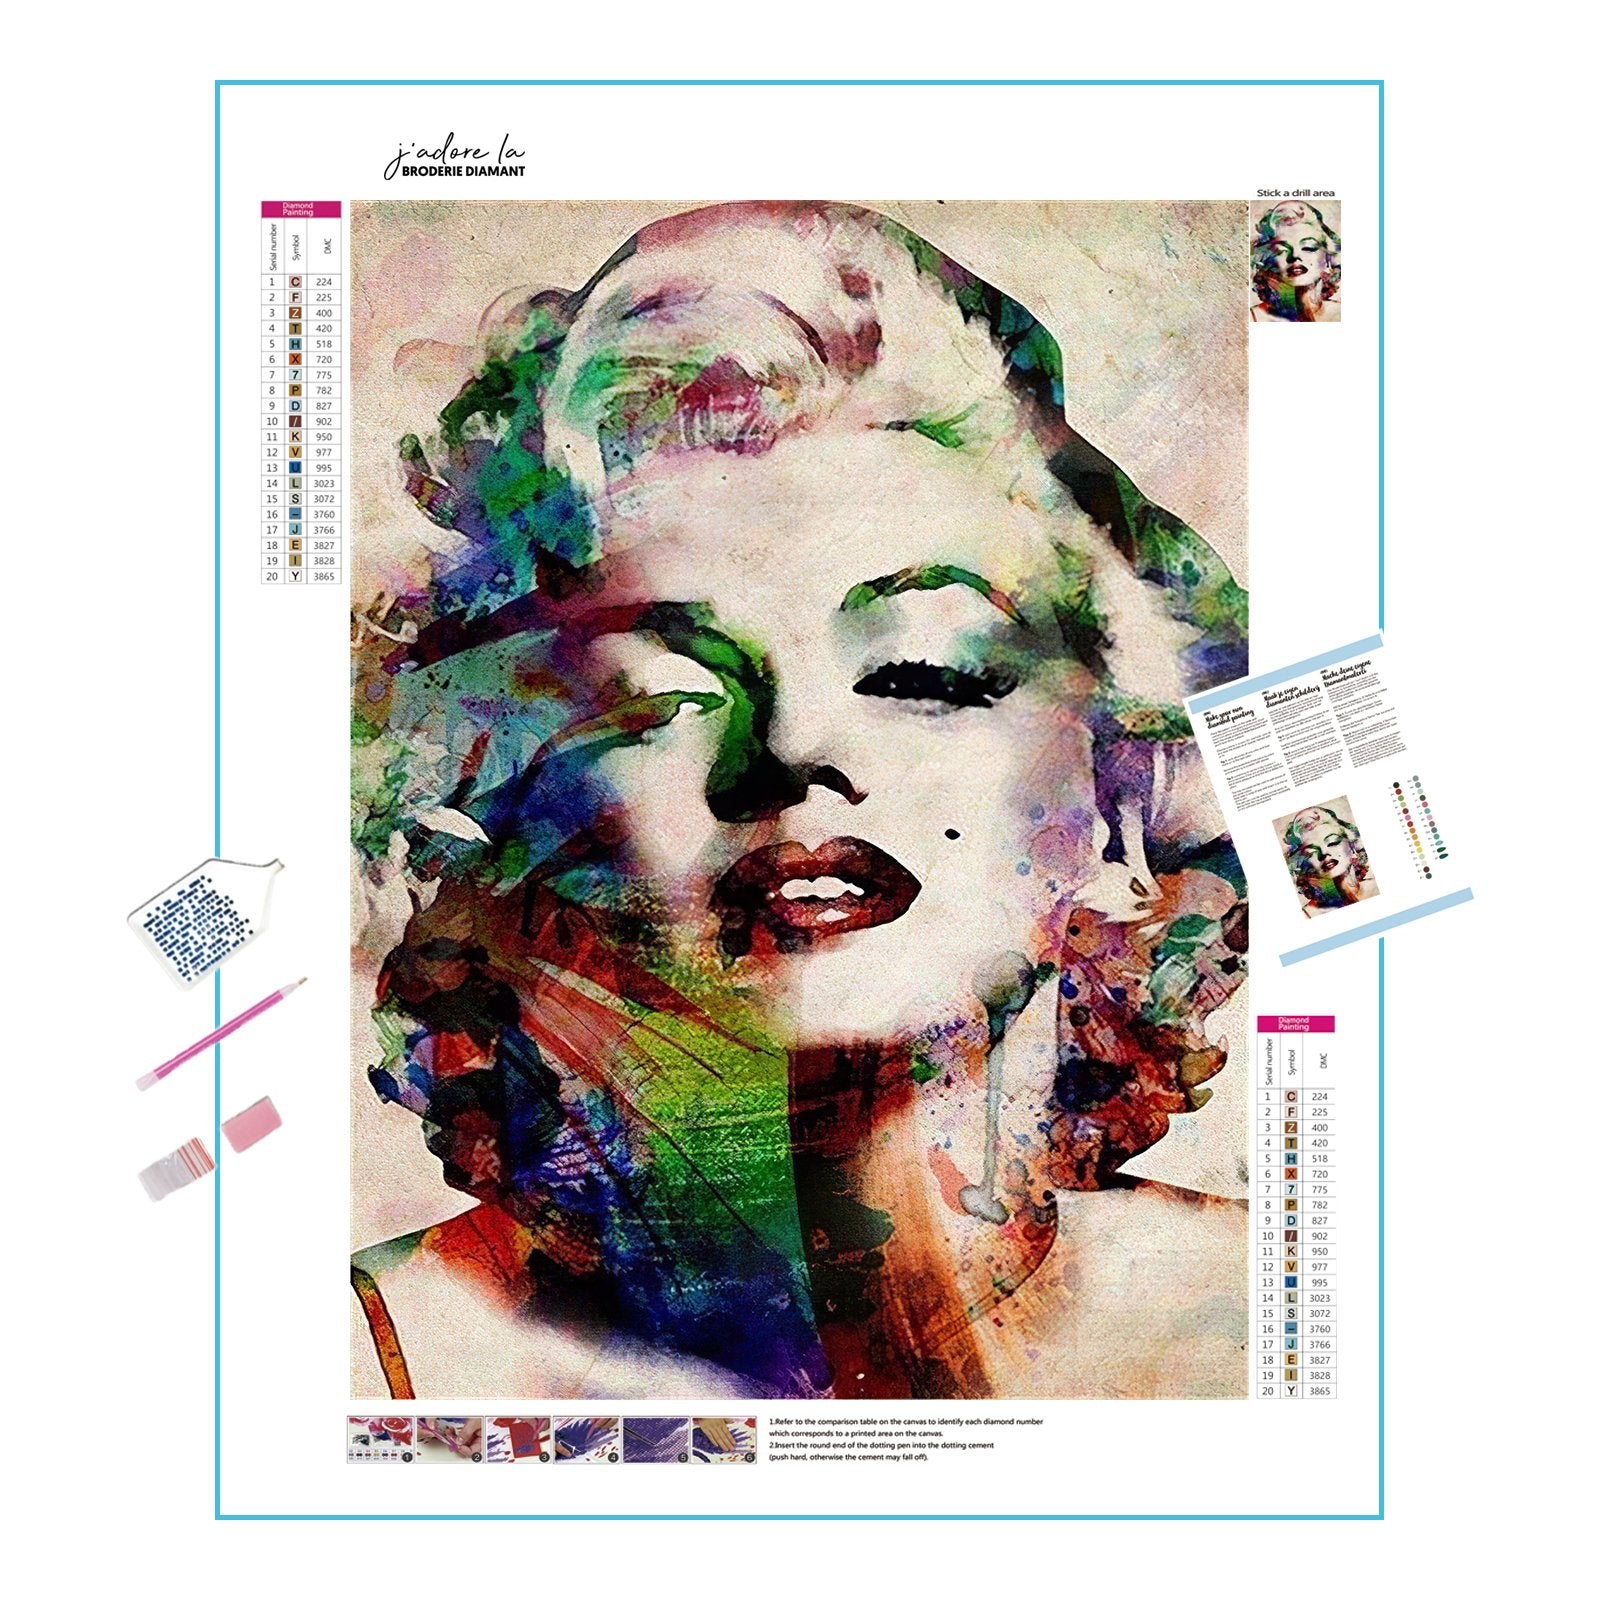 Diamond Painting - Das wundervolle Gesicht von Marilyn Monroe